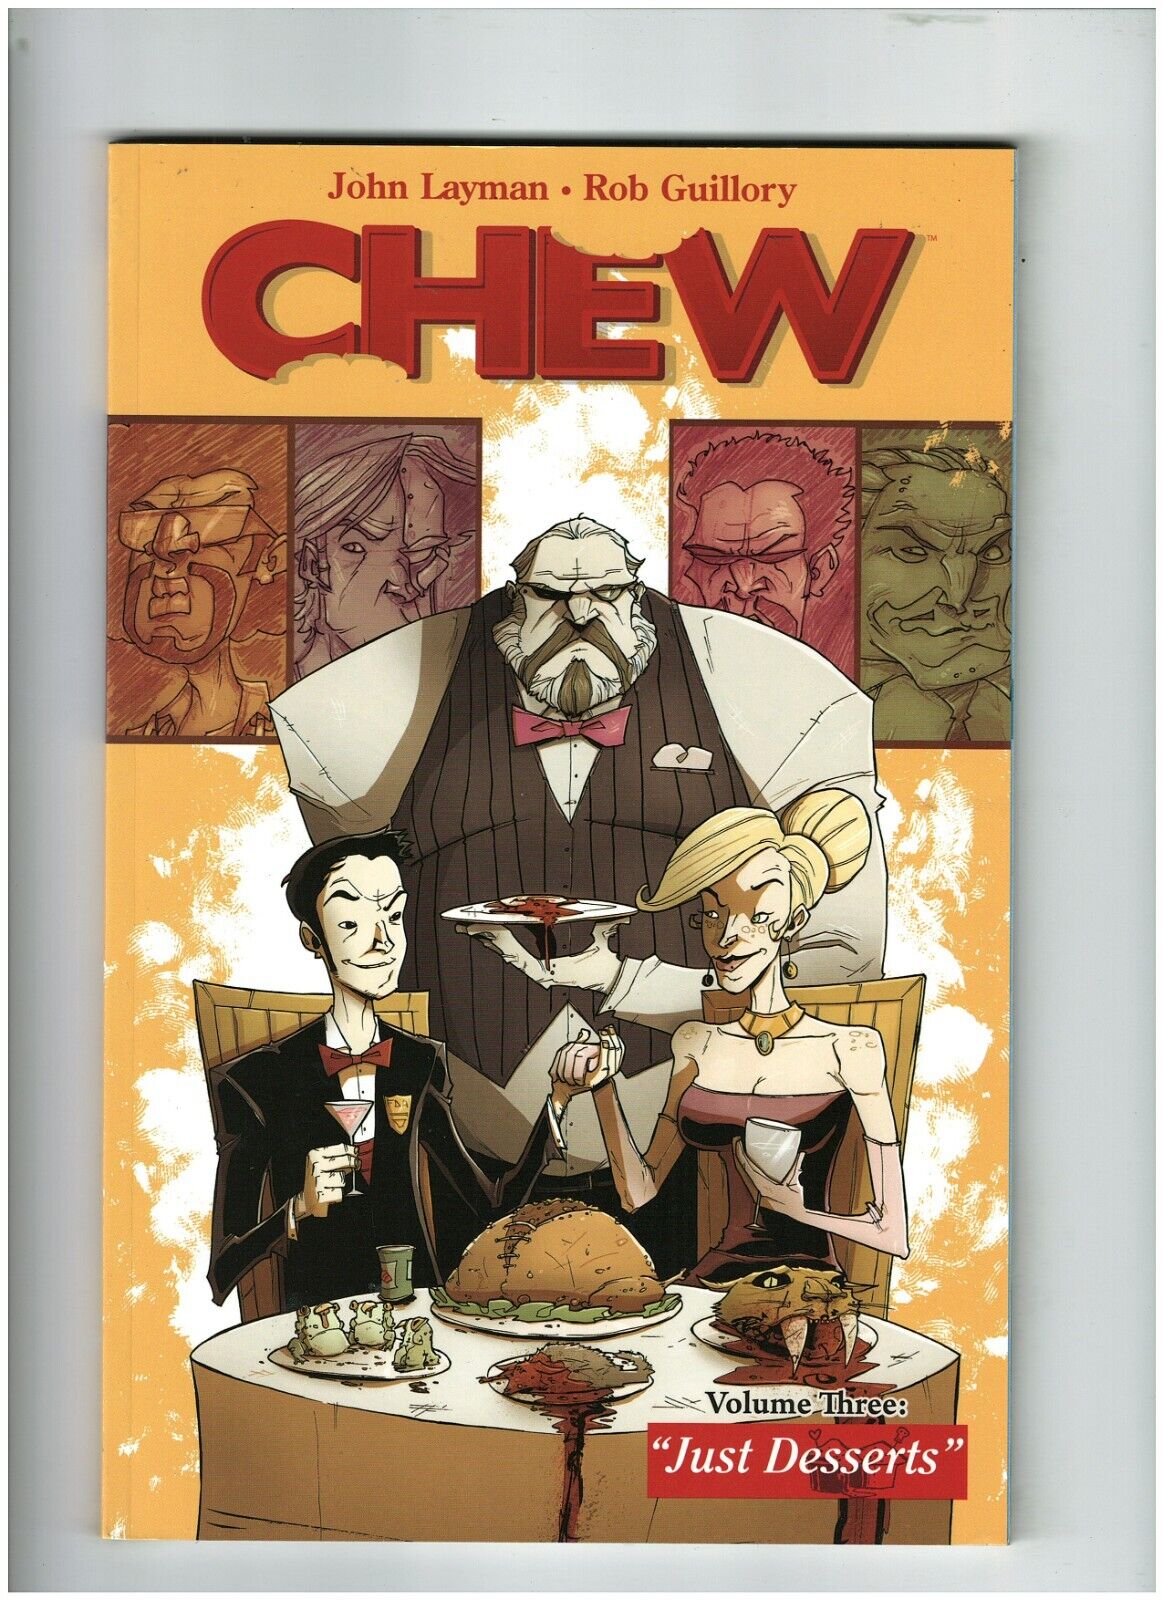 Chew Volume Three: Just Desserts NM- 9.2 TPB Image 2015 John Layman  